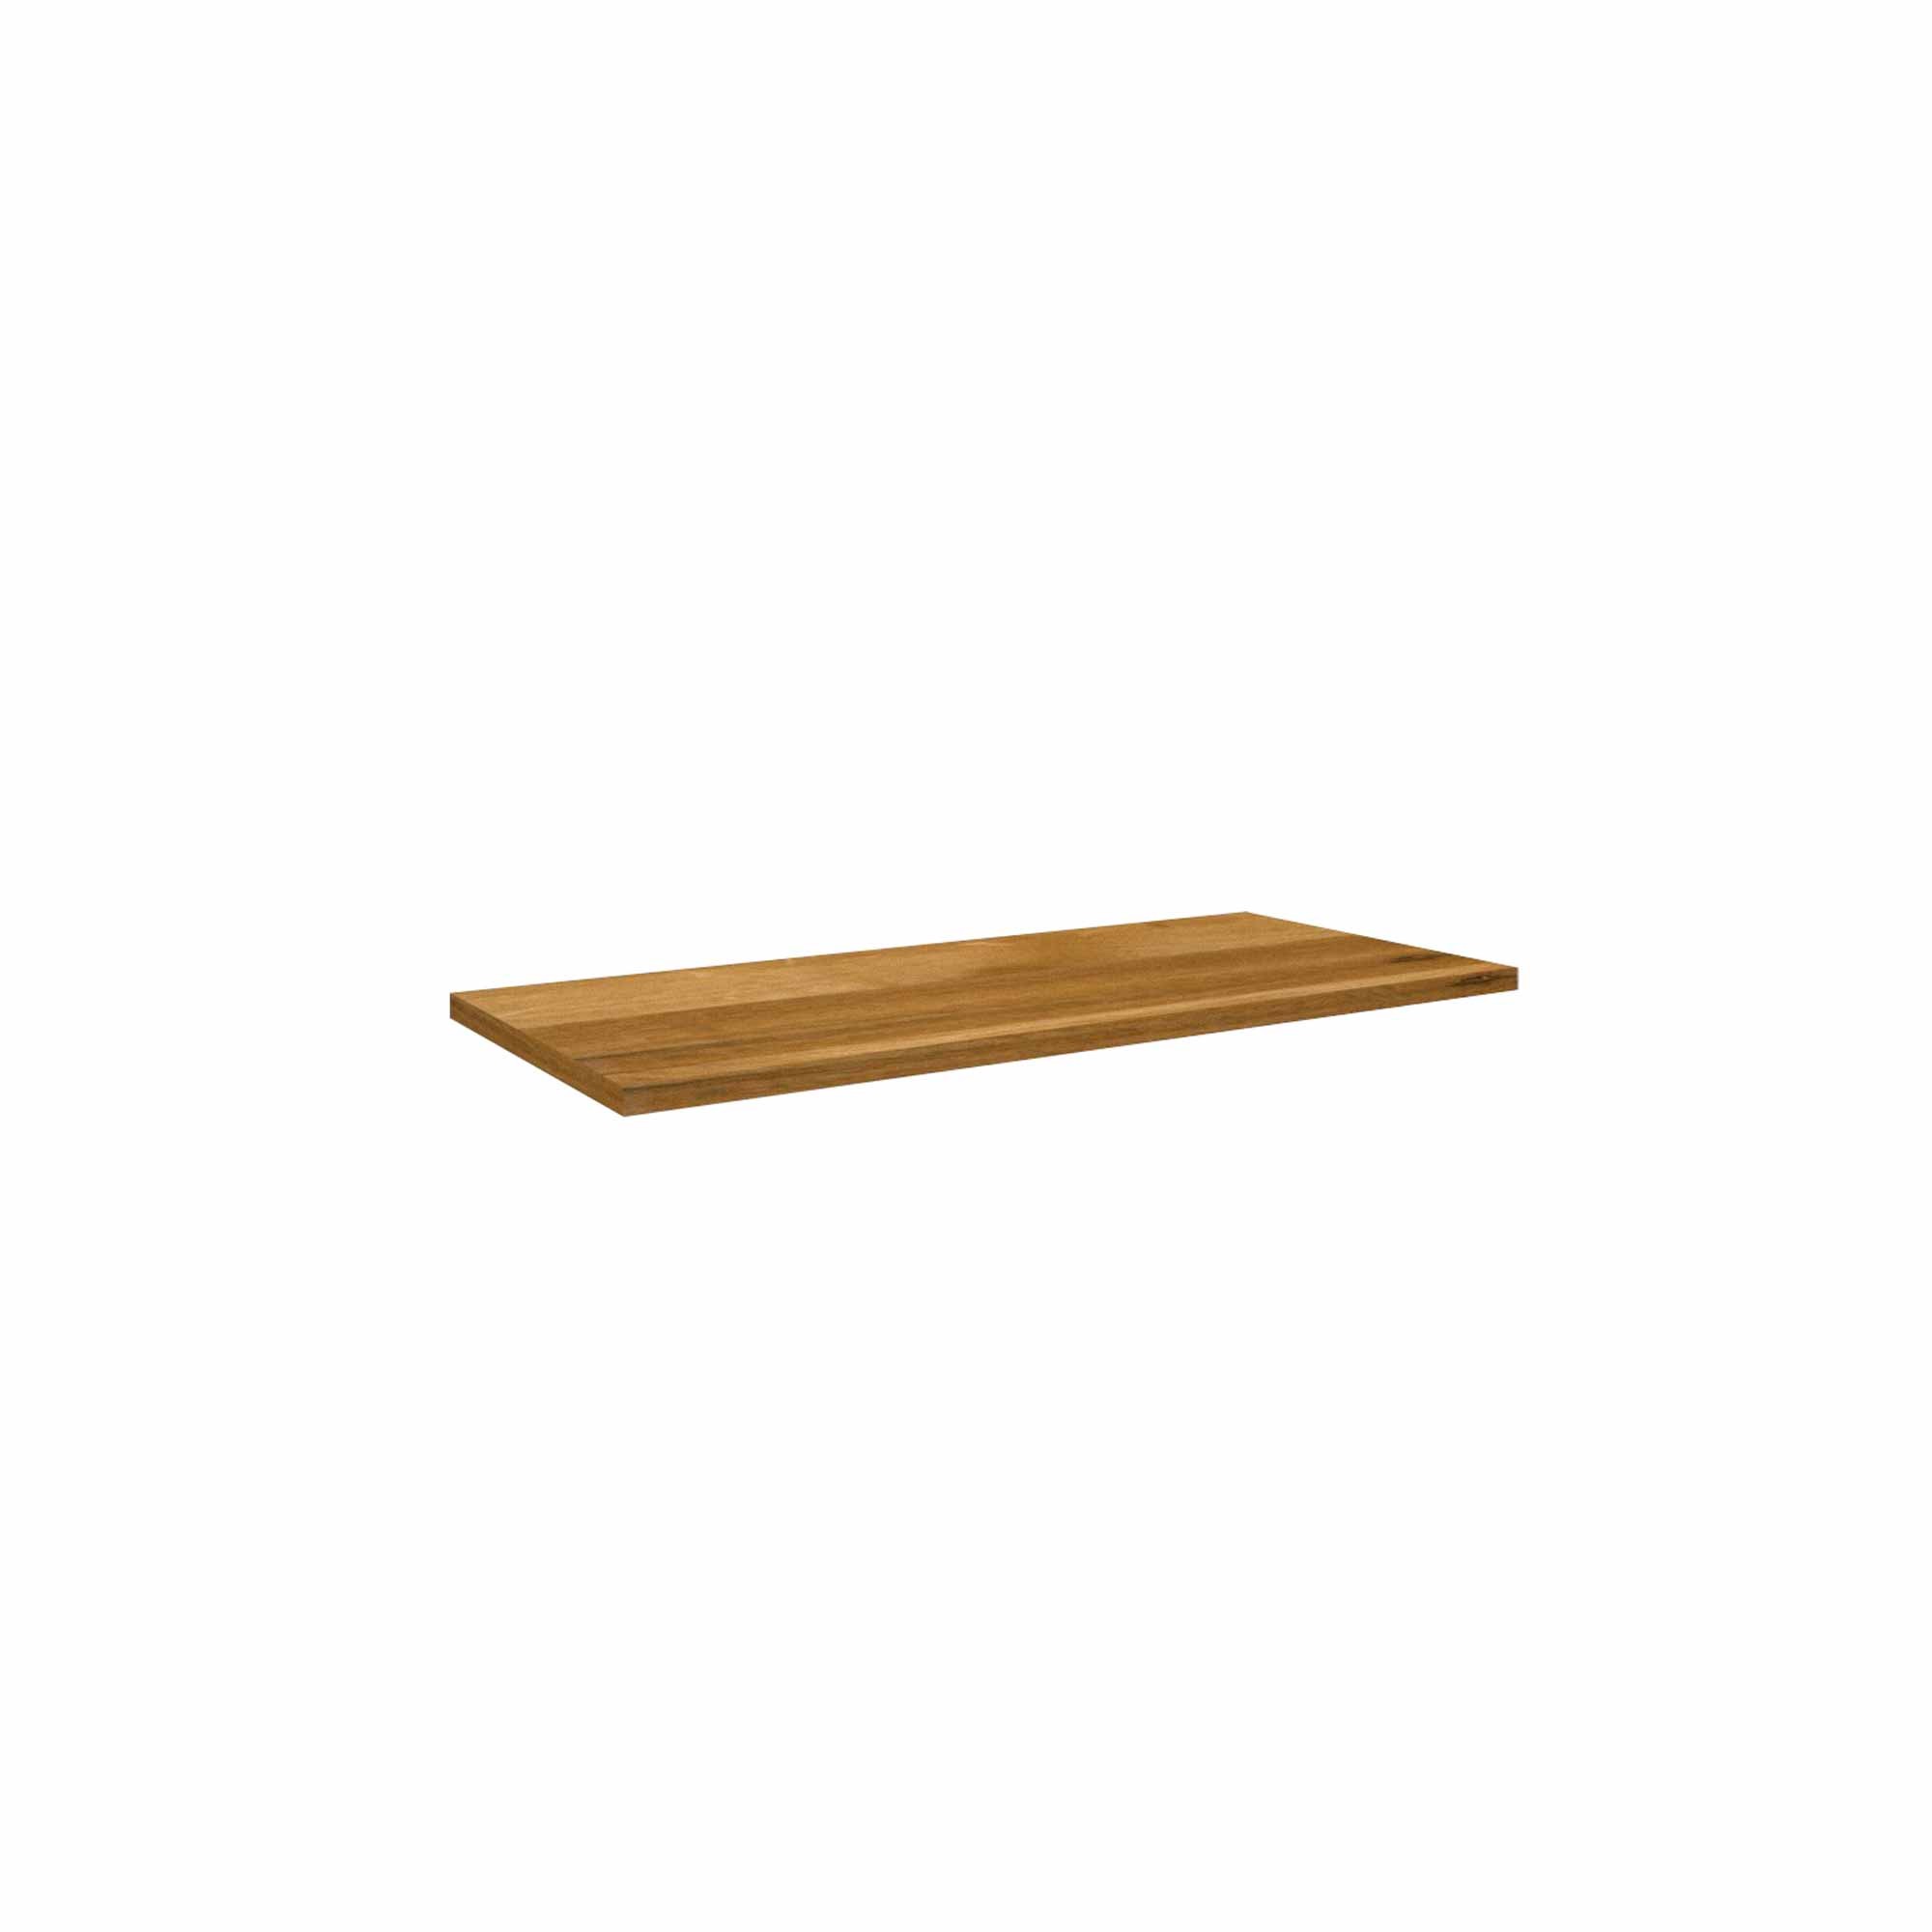 Nordic Works - Baldas rústicas en madera maciza de Castaño con soportes  invisibles. De 50 cm a 2 metros de largo. www.nordicworks.es  #nordicworksmadrid #baldasrusticas #estanteriaamedida #mesasamedida  #mesasamedidamadrid #Madrid #interiordesign #design